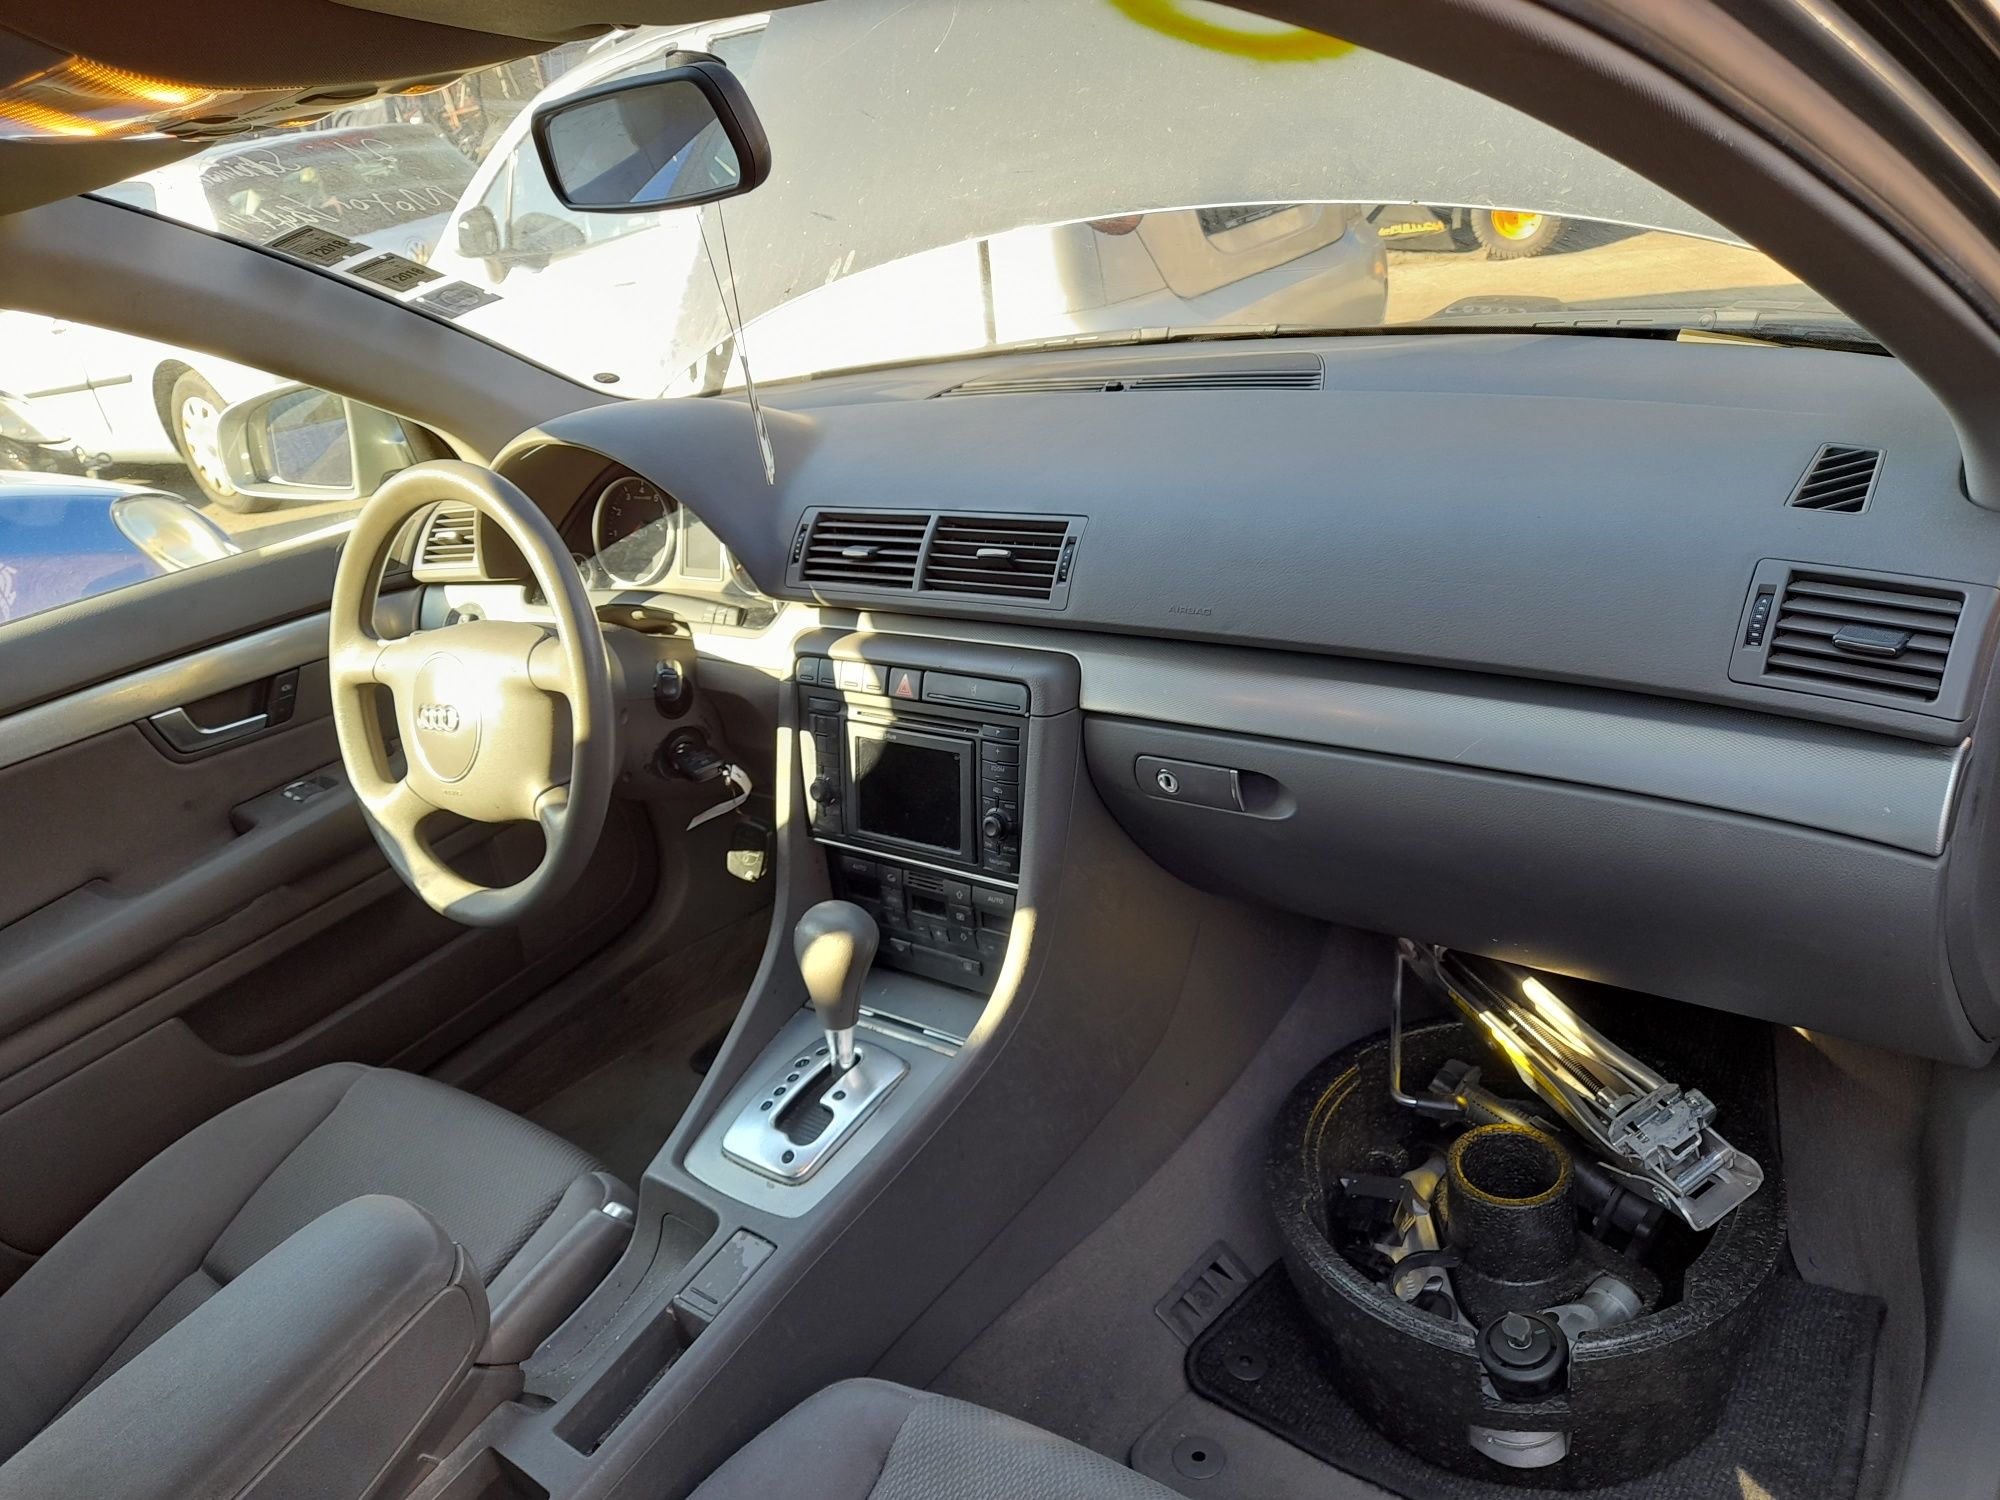 Plansa bord / Kit plansa bord + airbag Audi A4 B6 / Audi A4 B7